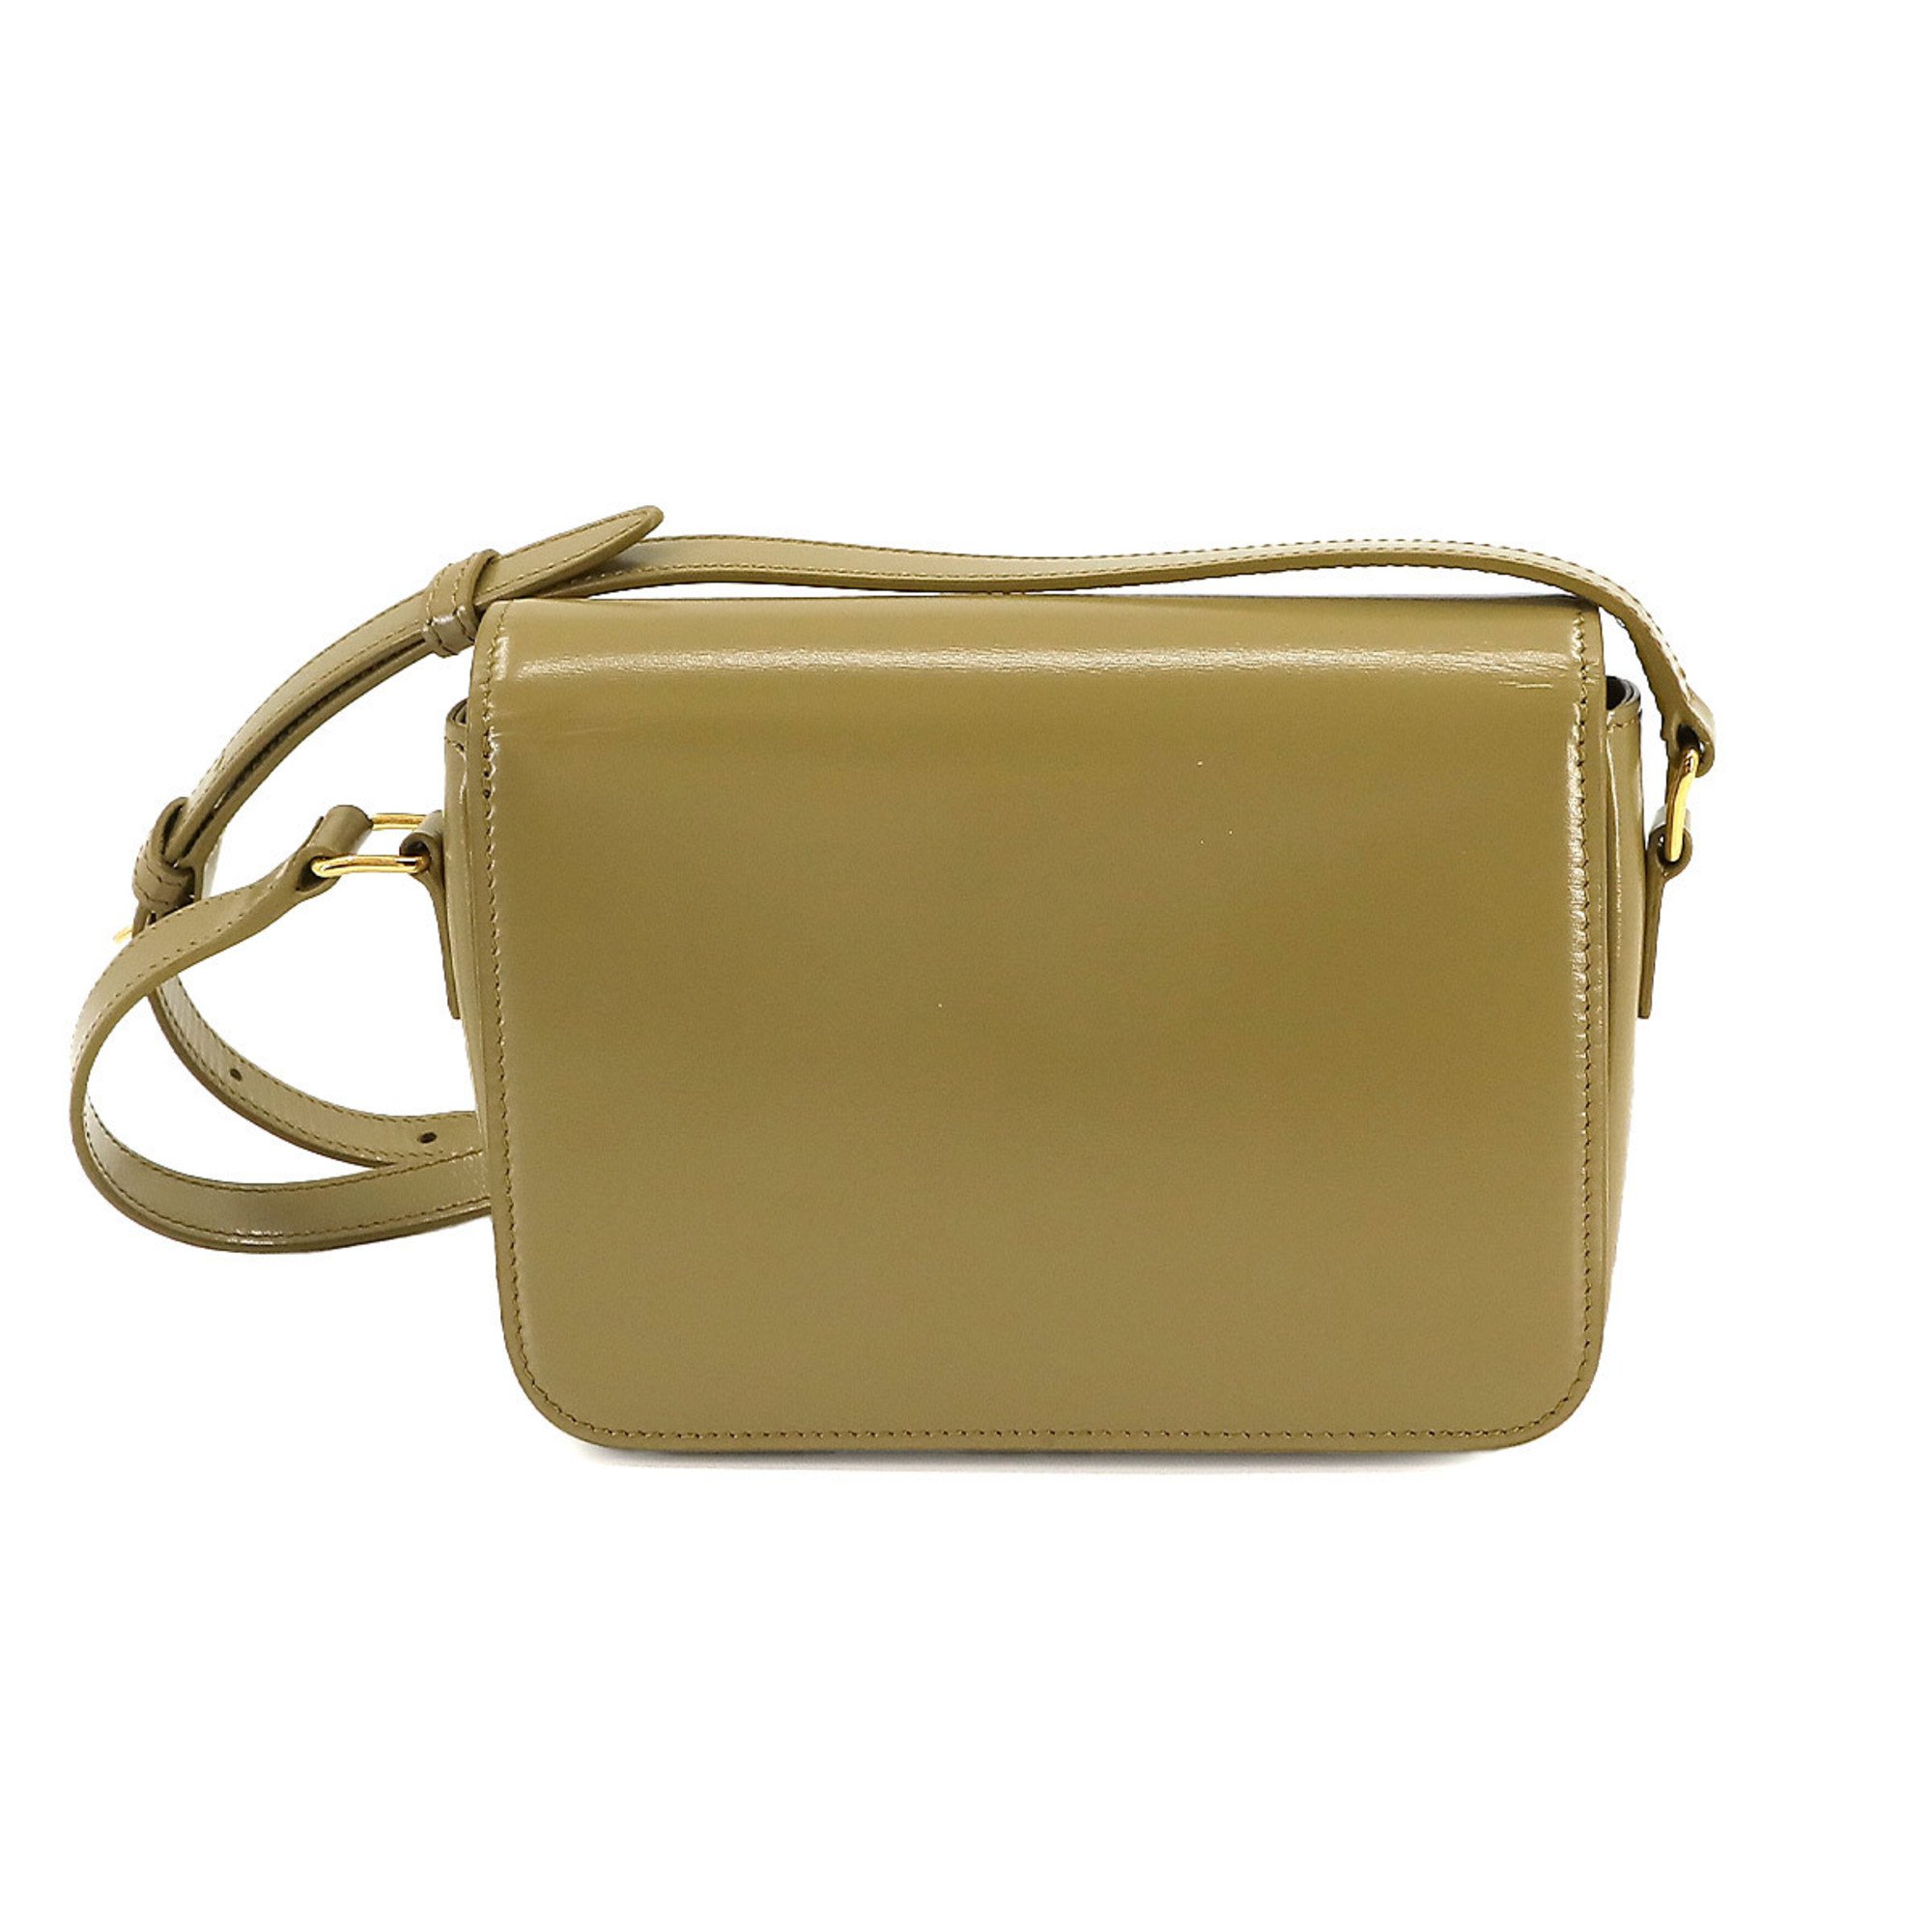 CELINE Teen Triomphe Bag Shoulder Leather Green 188423BF4 Gold Hardware